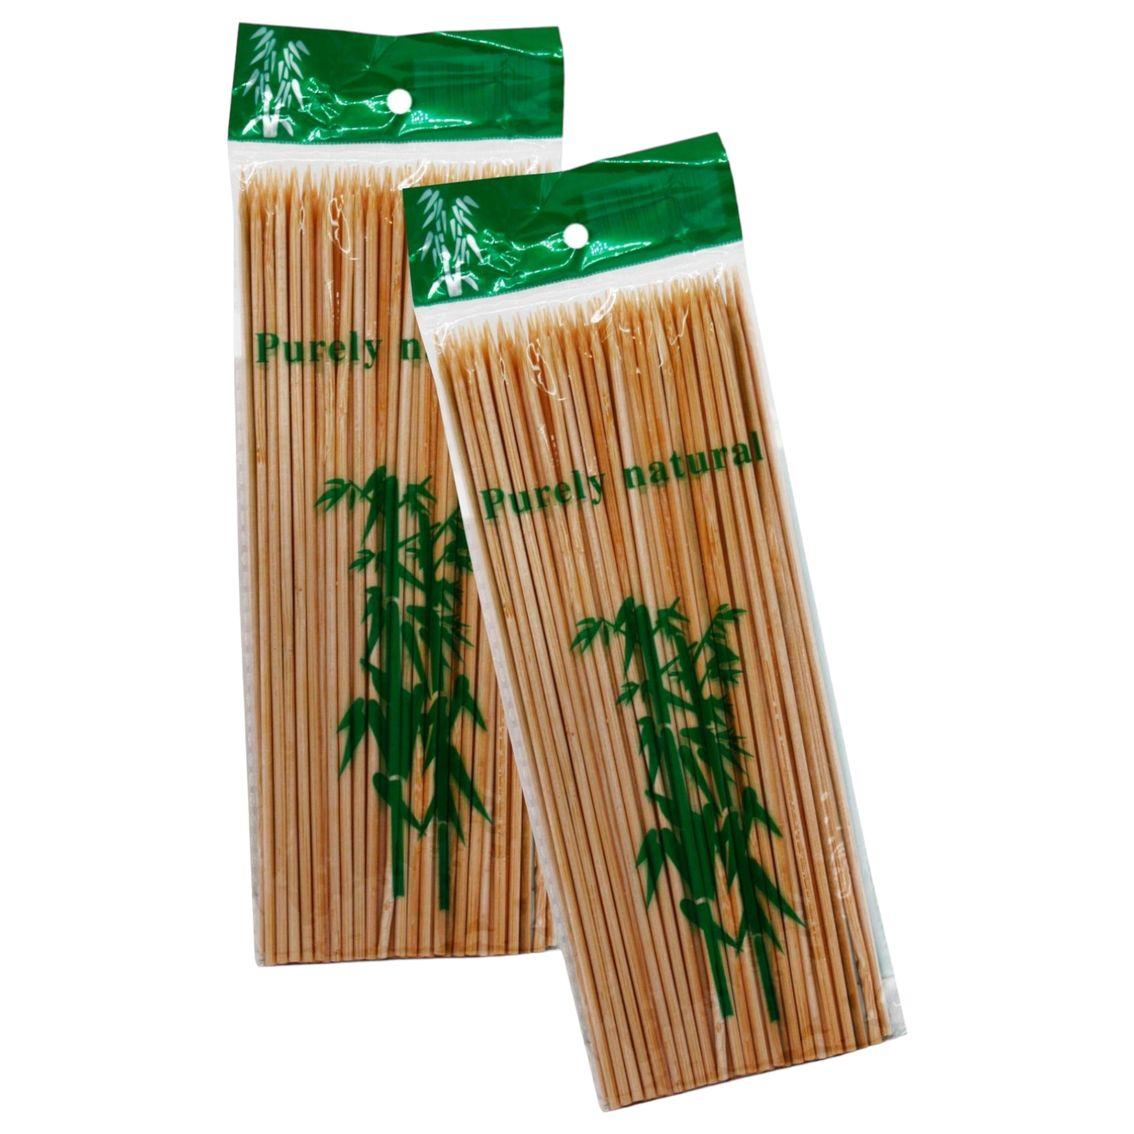 Шпажки бамбукові для канапе або шашлика у ресторанах, дерев'яні палички (15см) 80шт/уп (+-5шт)